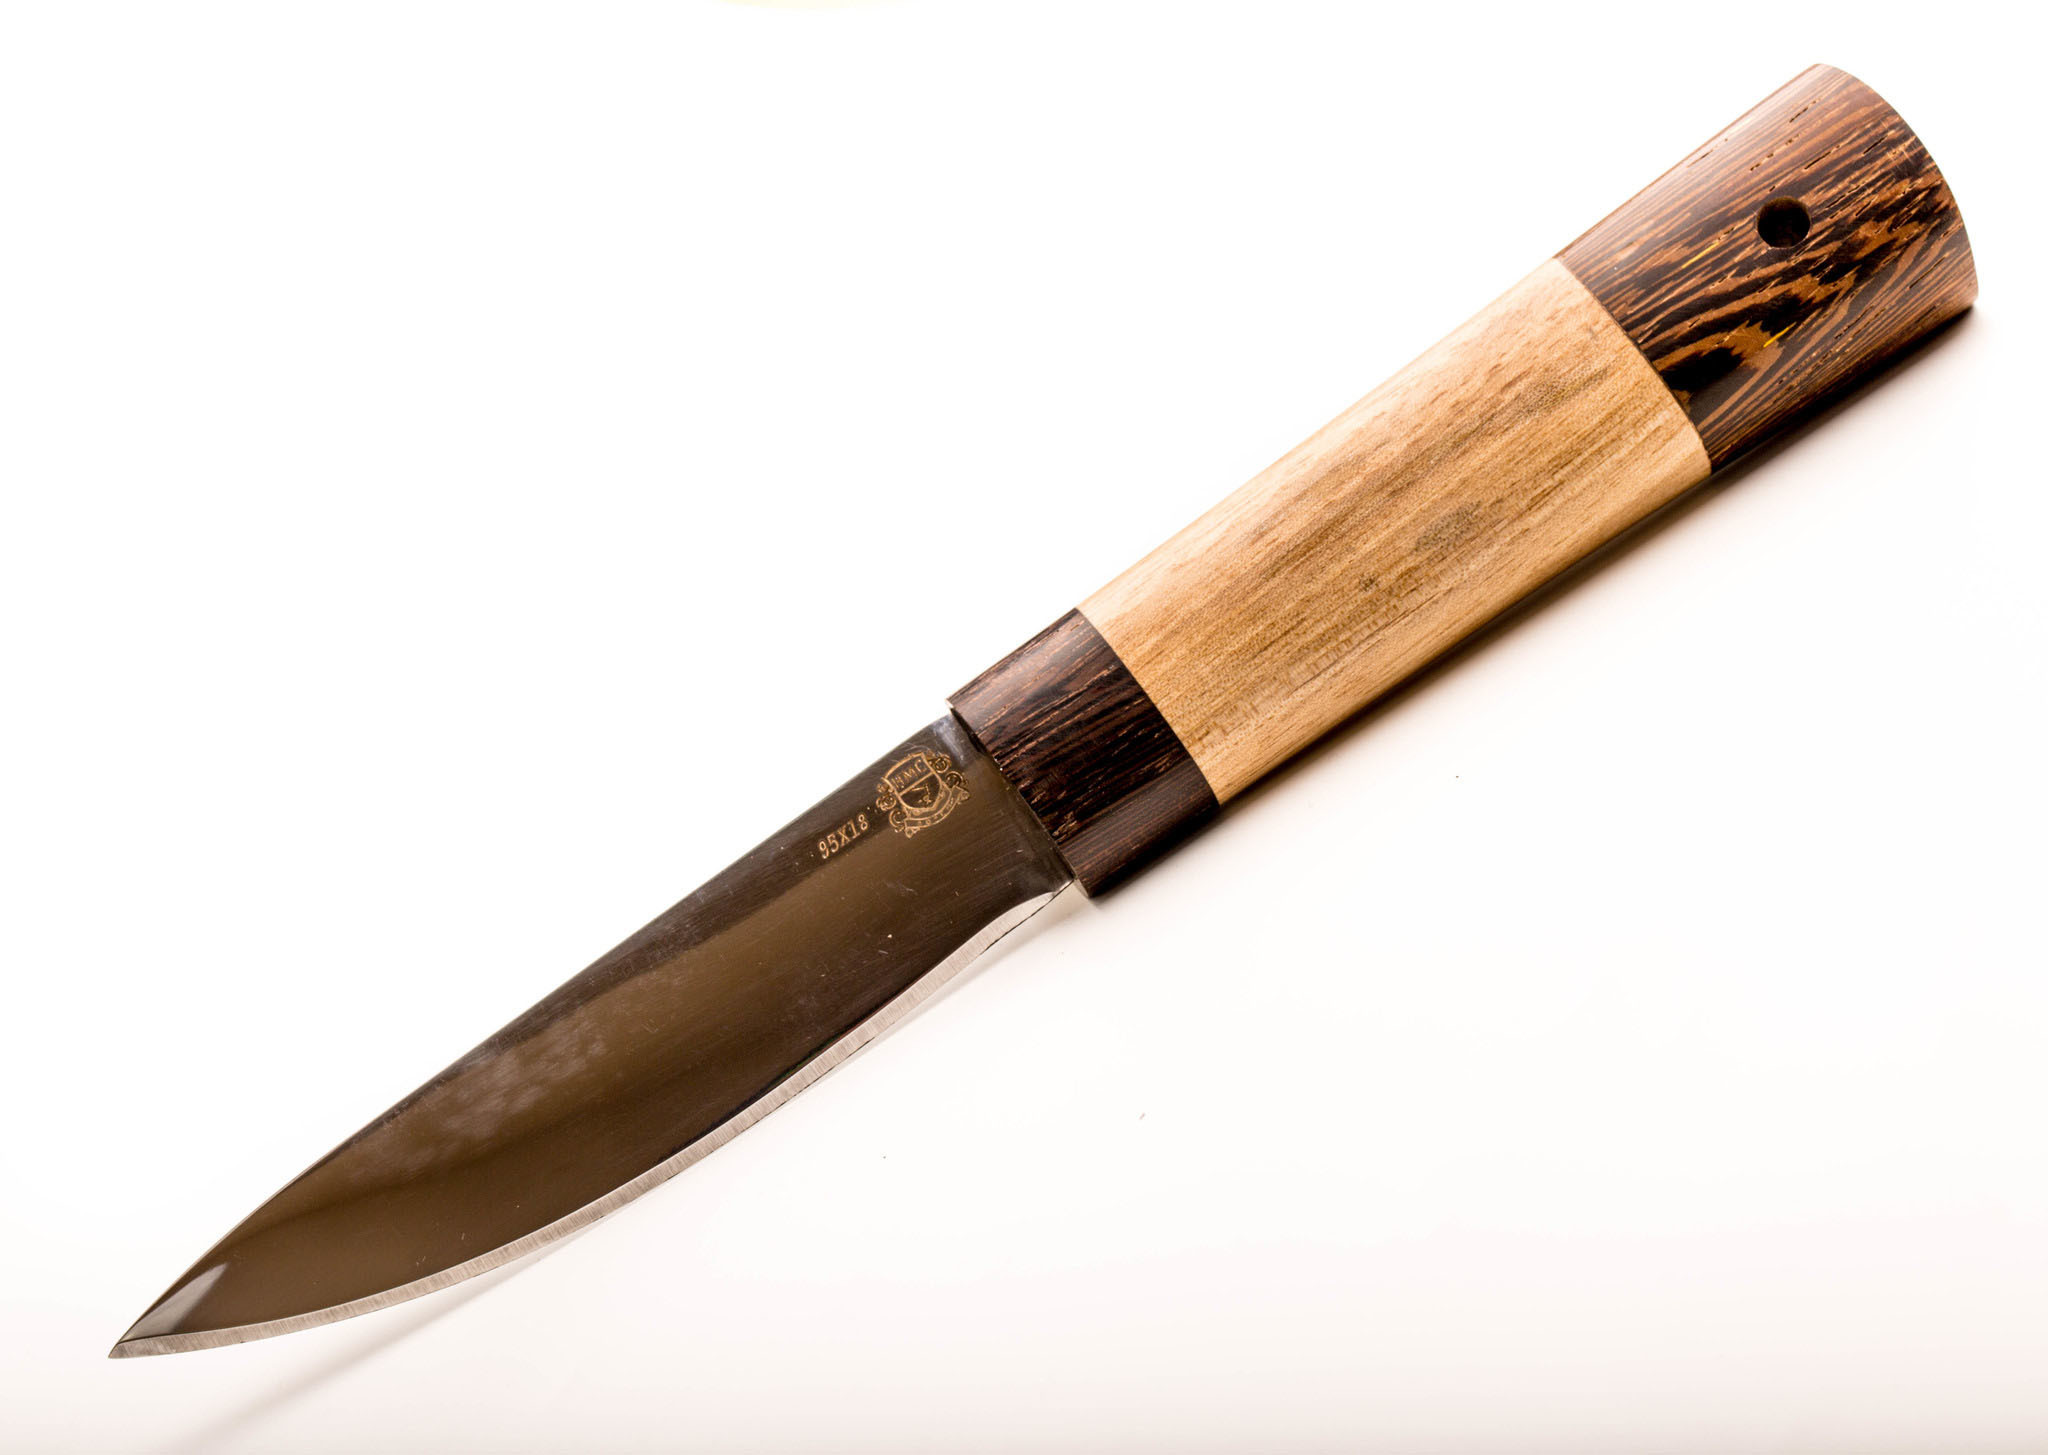 

Нож Якутский большой, сталь 95х18, рукоять орех/венге